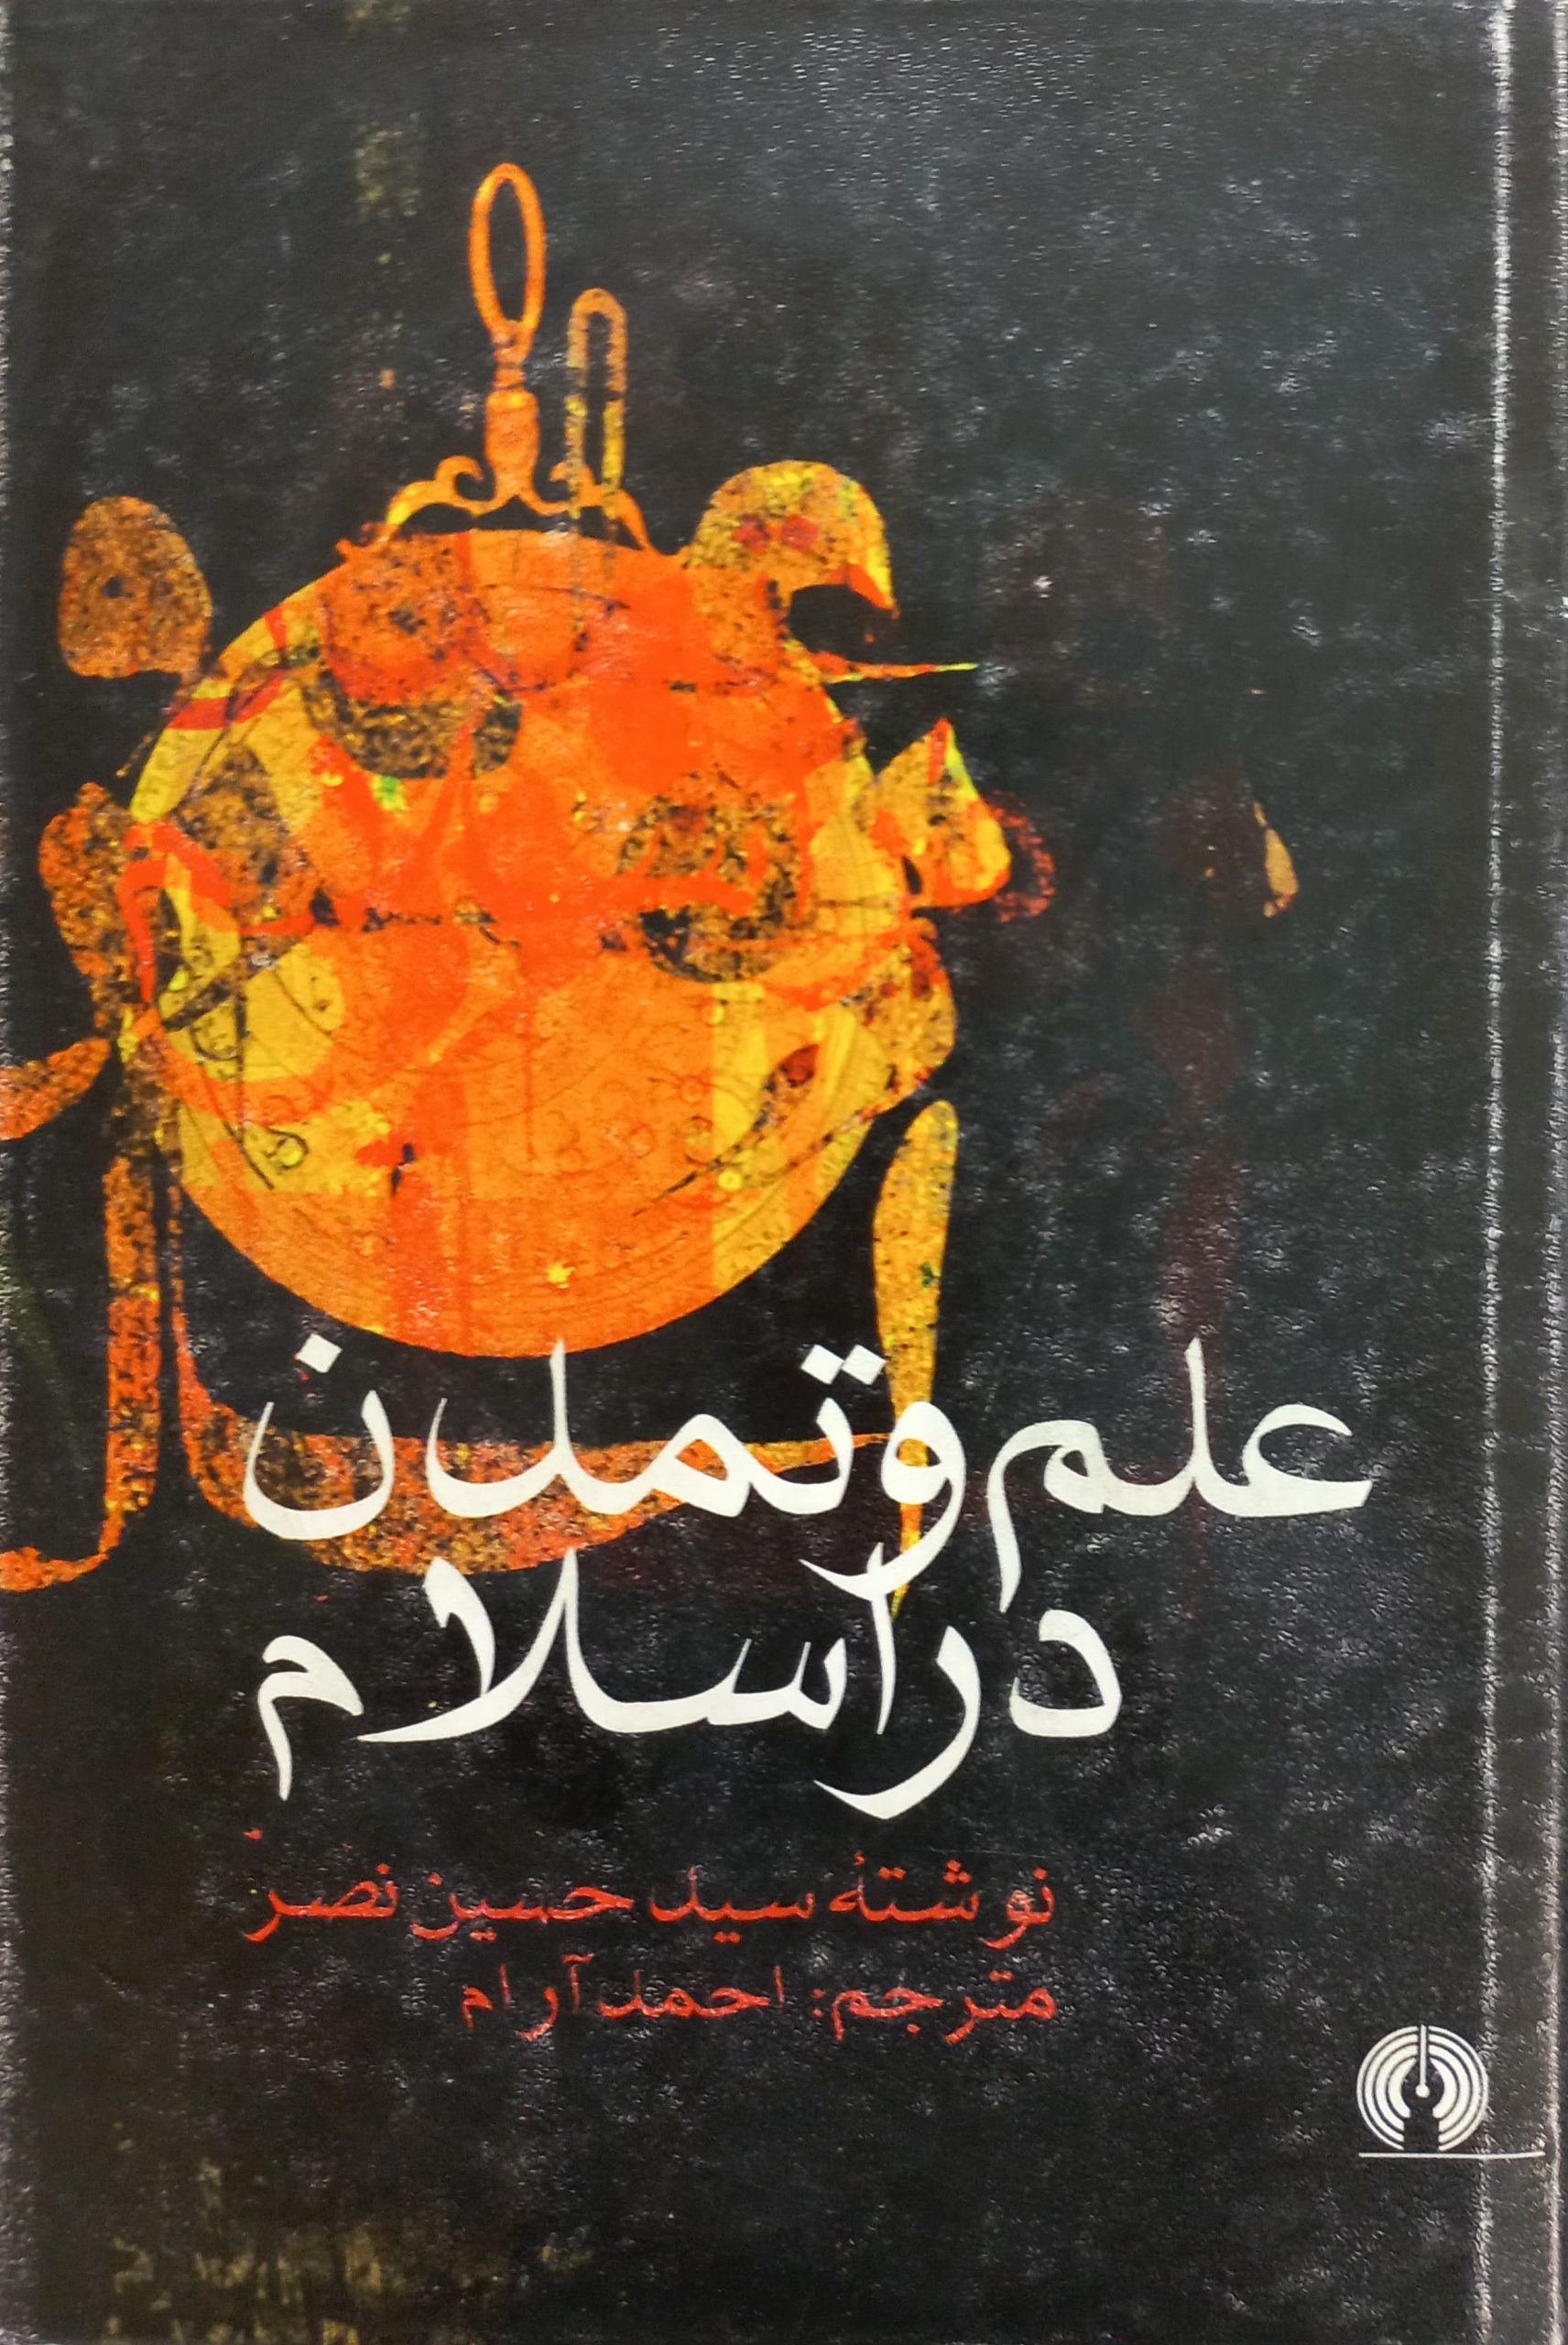 علم و تمدن در اسلام | سید حسین نصر